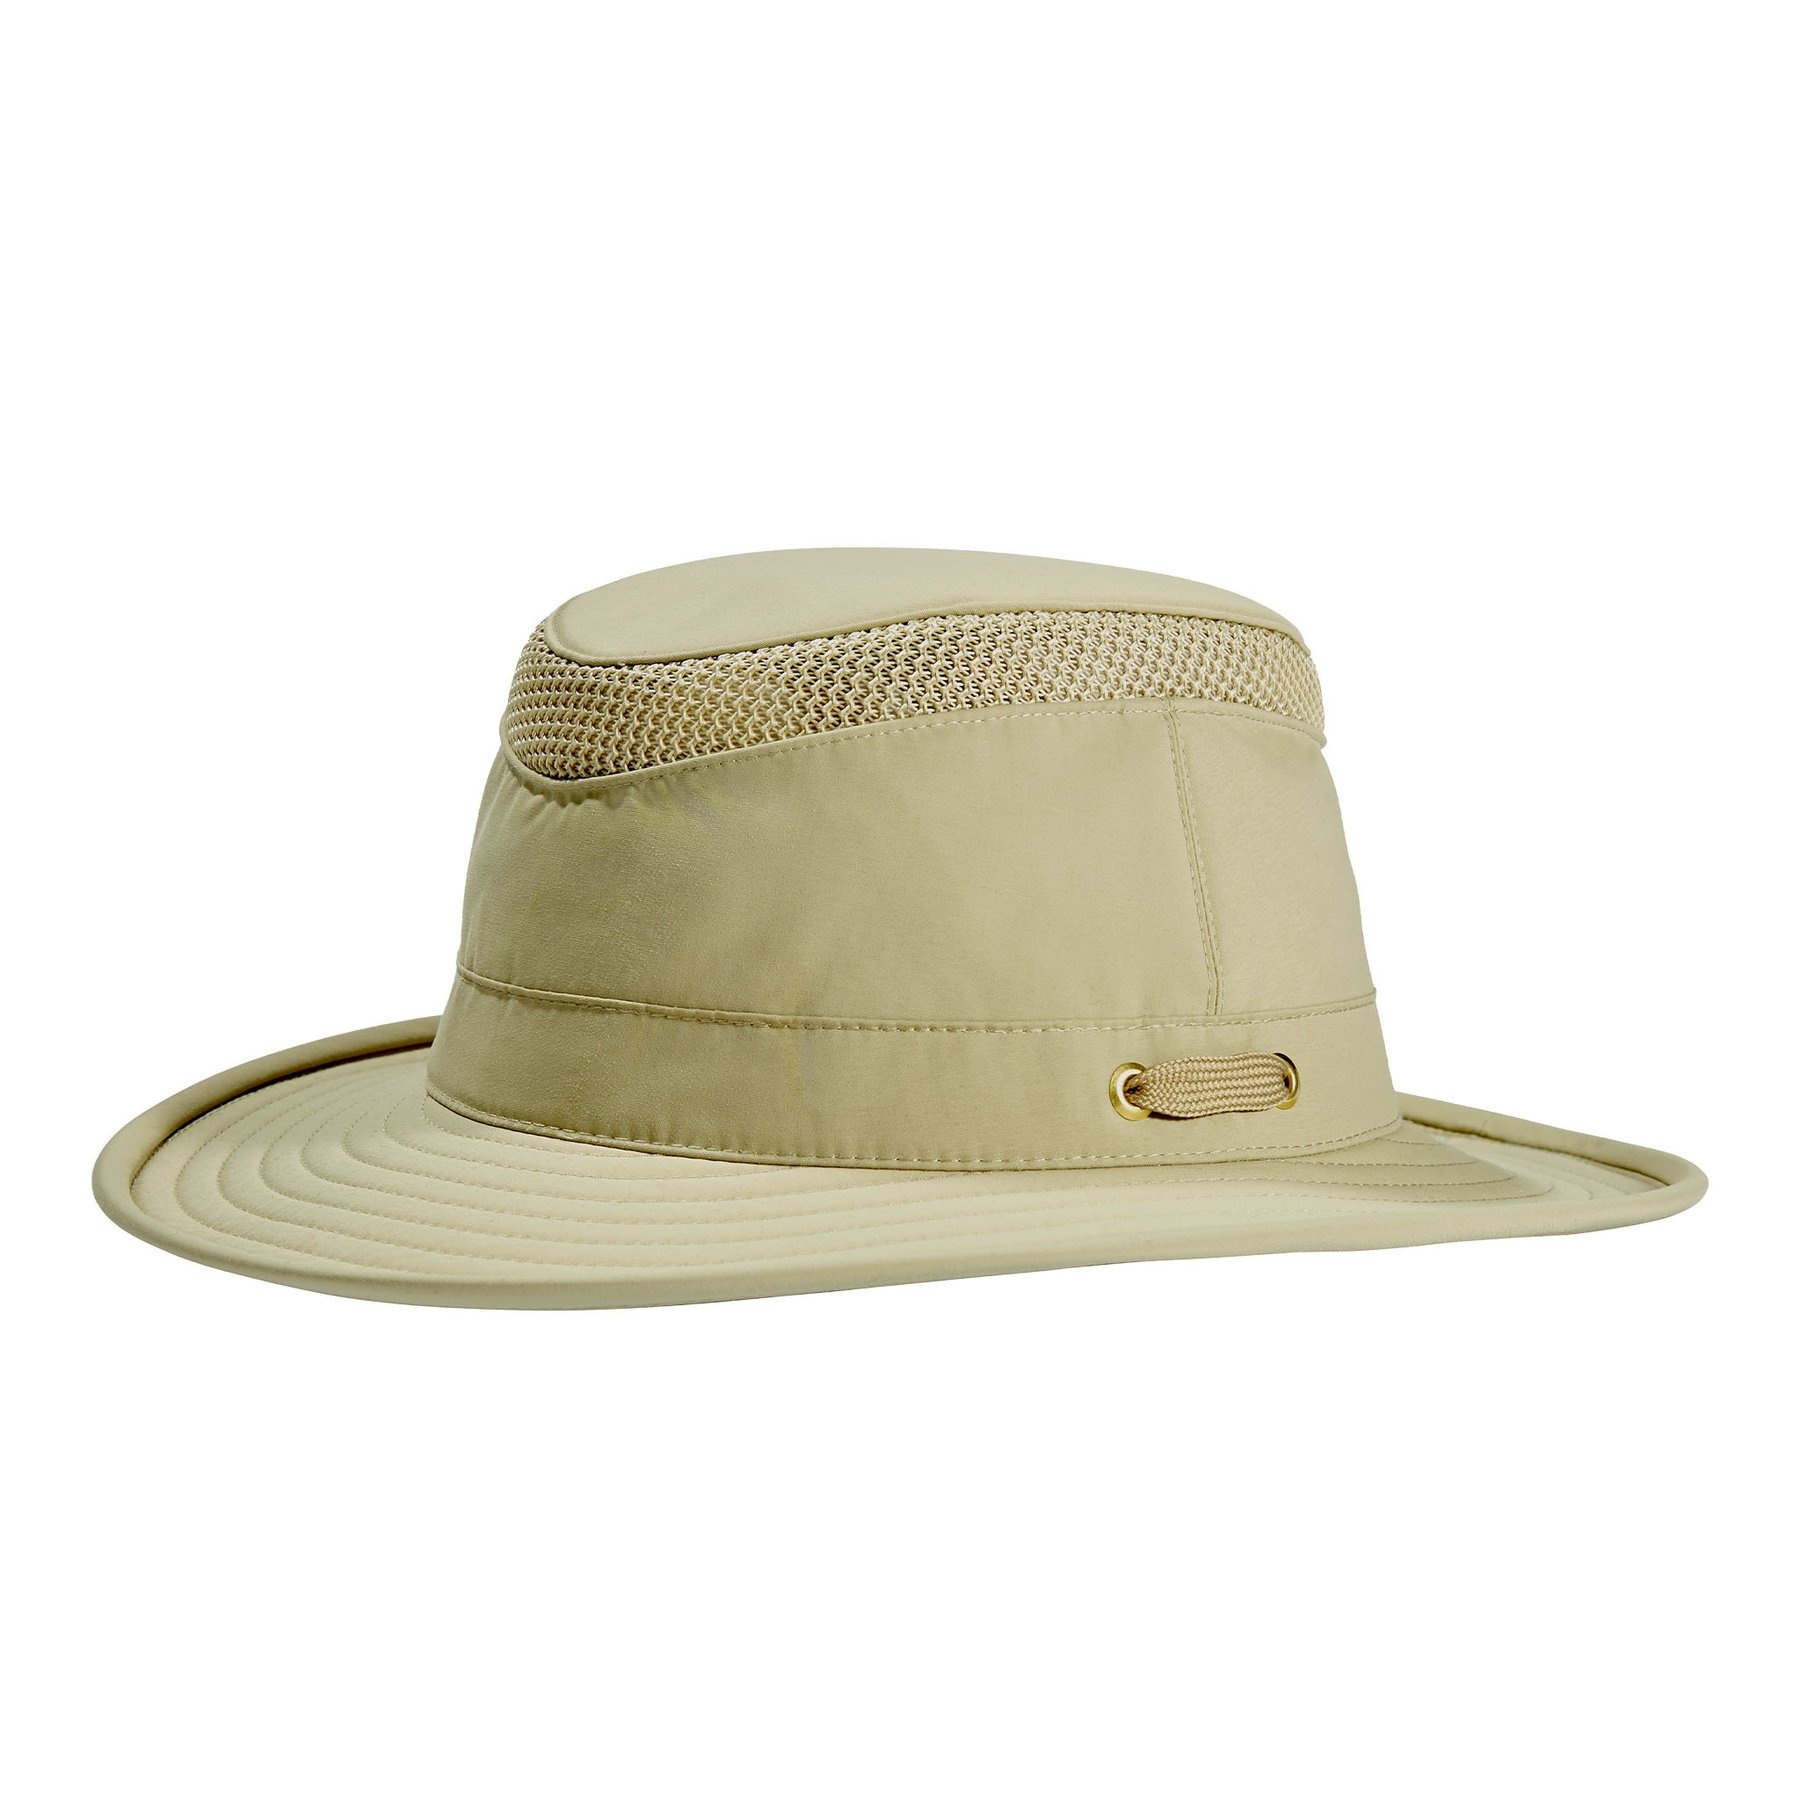 Tilley Ltm5 Airflo Hat - Khaki - 7 1/4